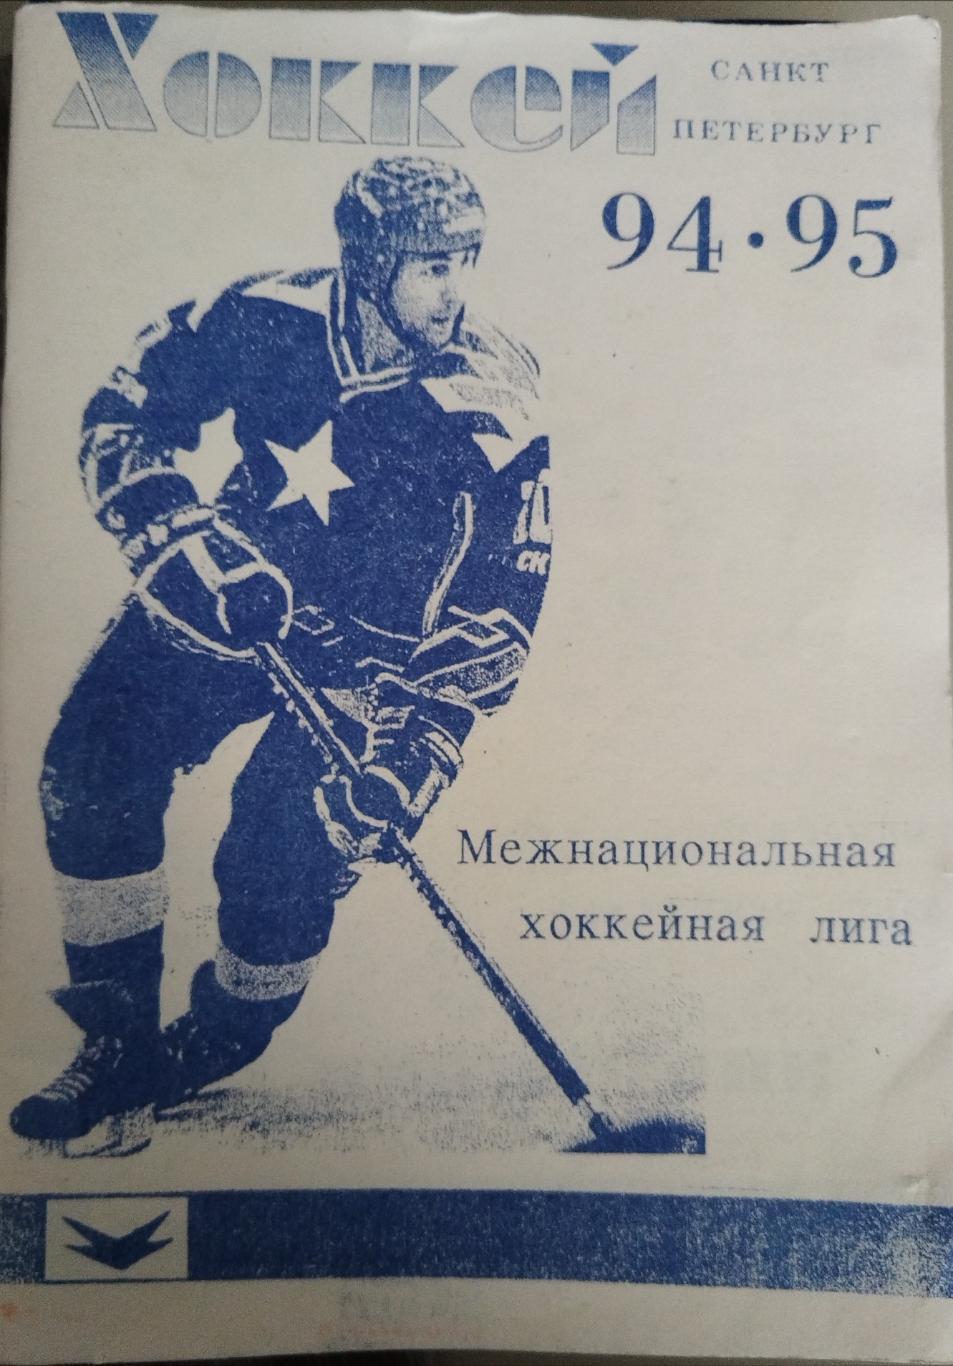 Календарь-справочник хоккей Санкт-Петербург 1994/95